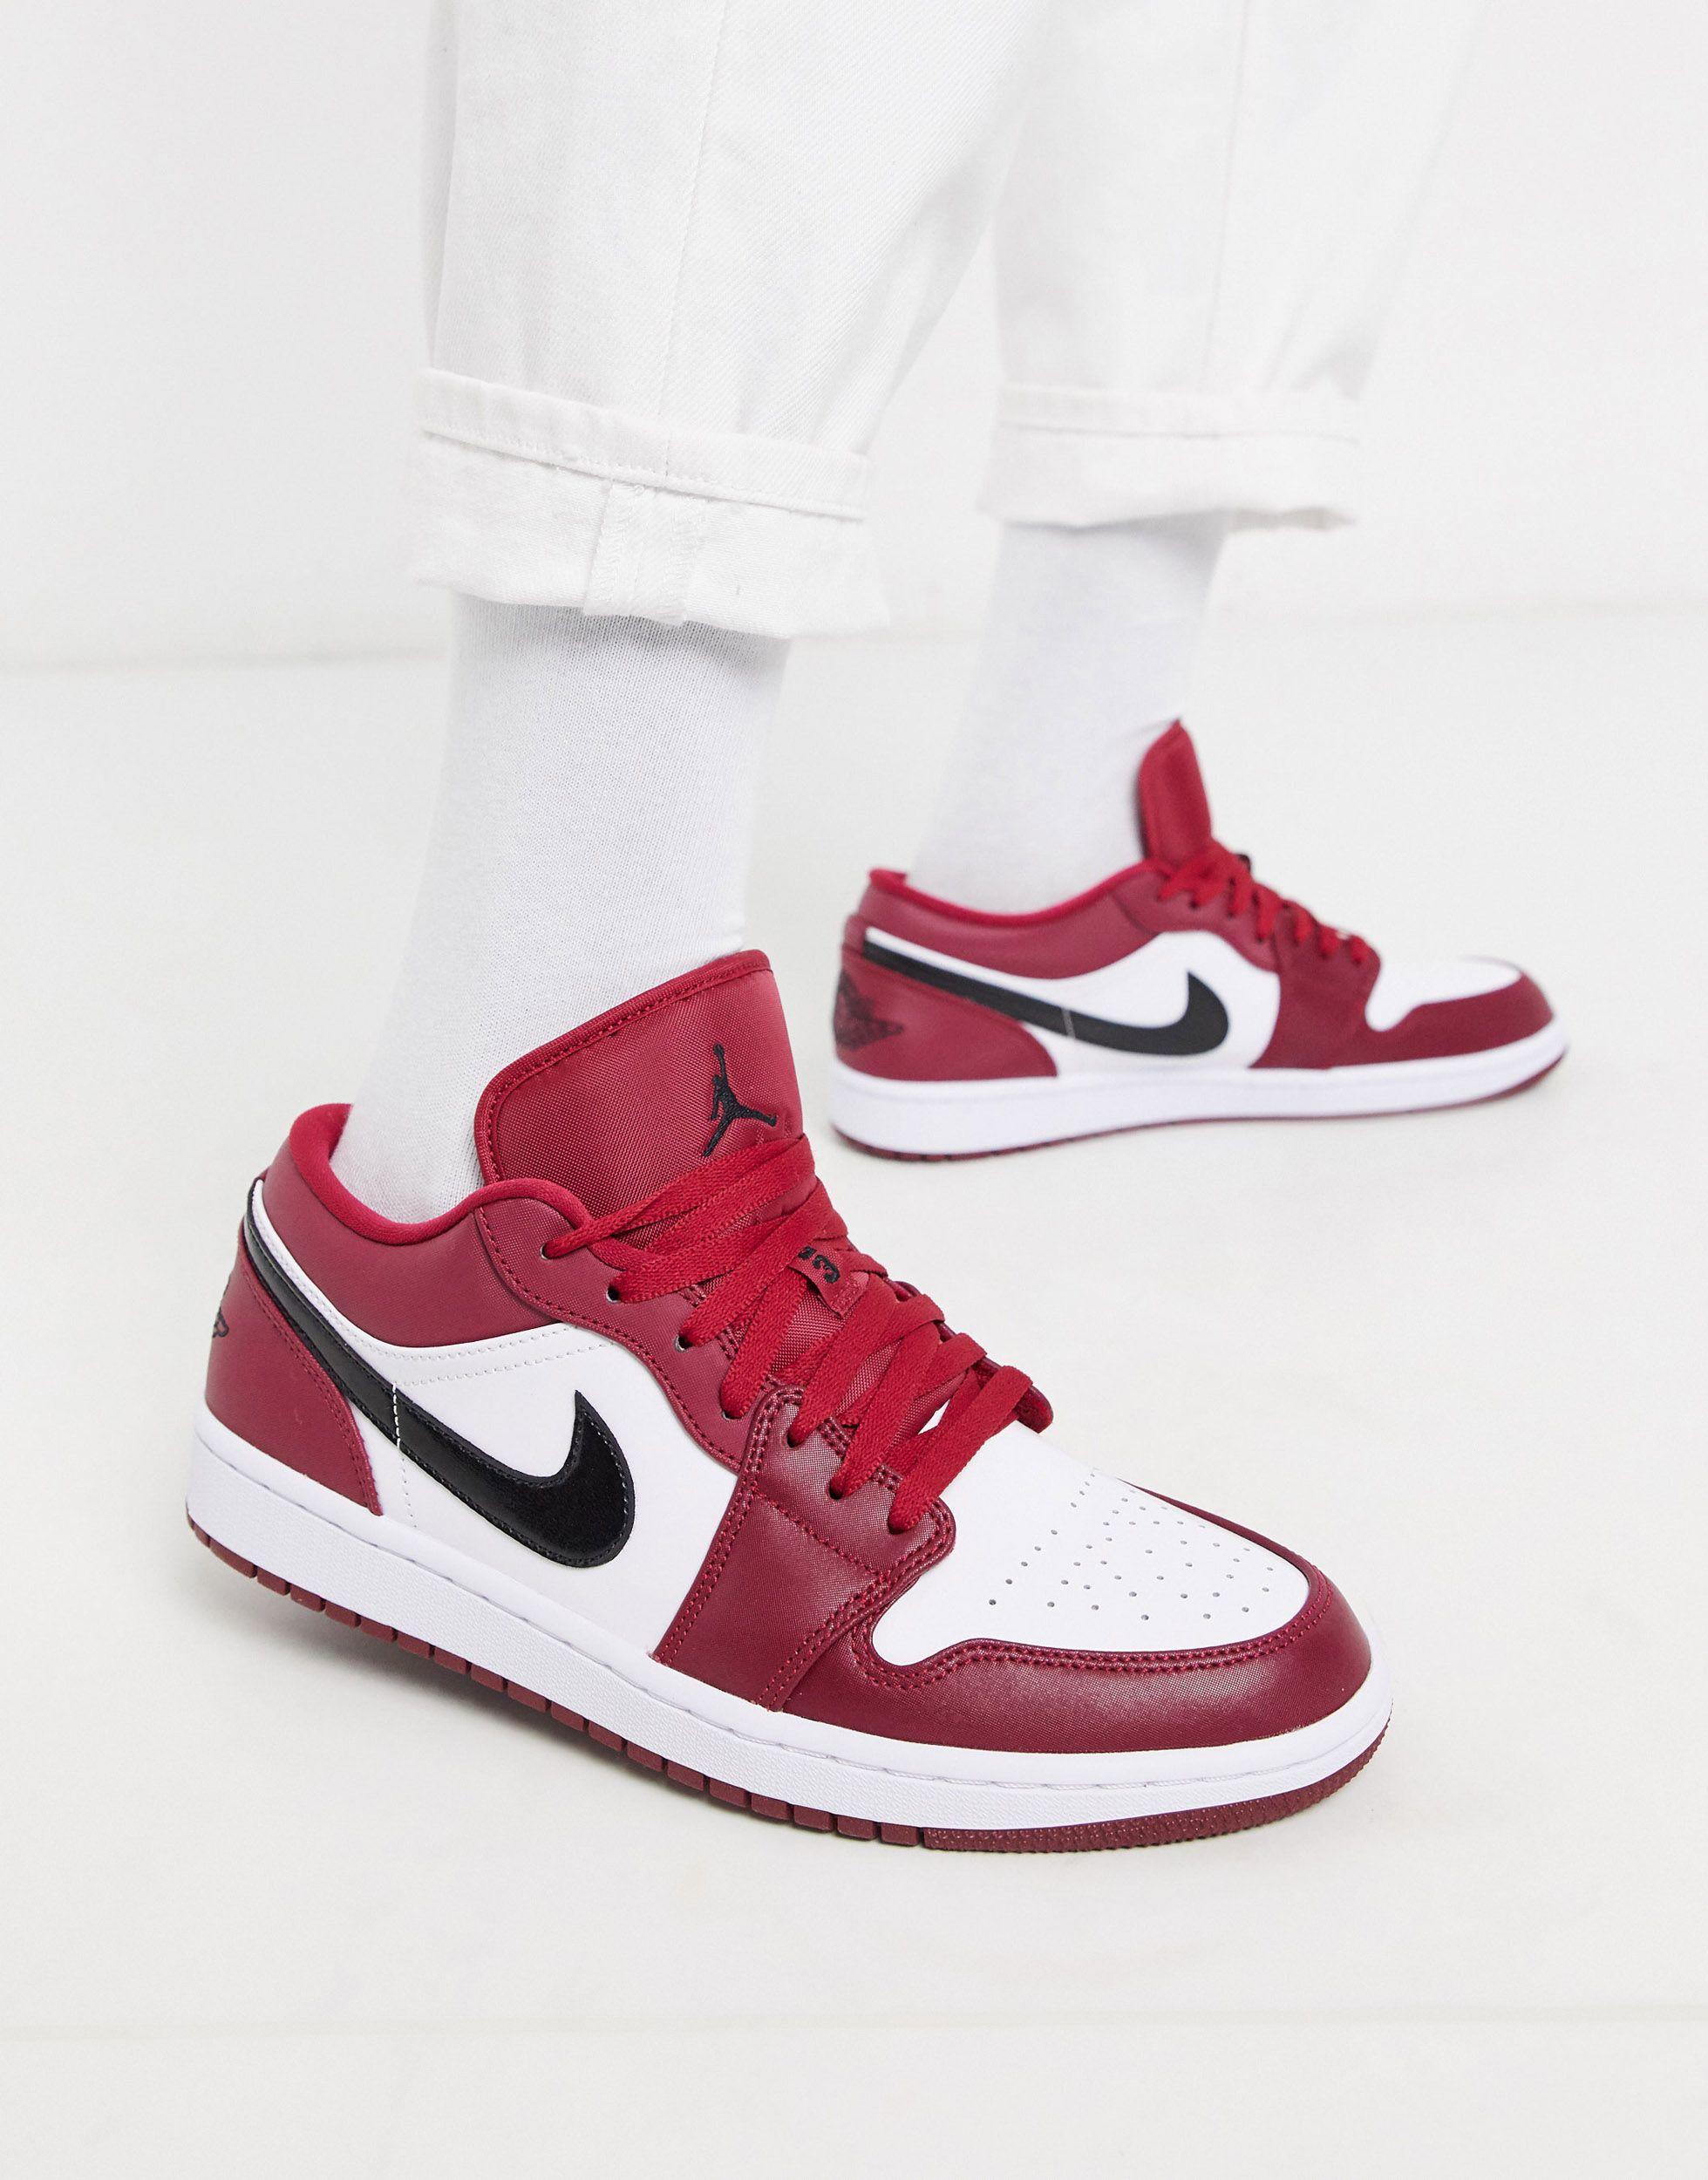 Nike - Air 1 - Sneakers basse rosseNike in Pelle da Uomo colore Rosso - 90%  di sconto | Lyst